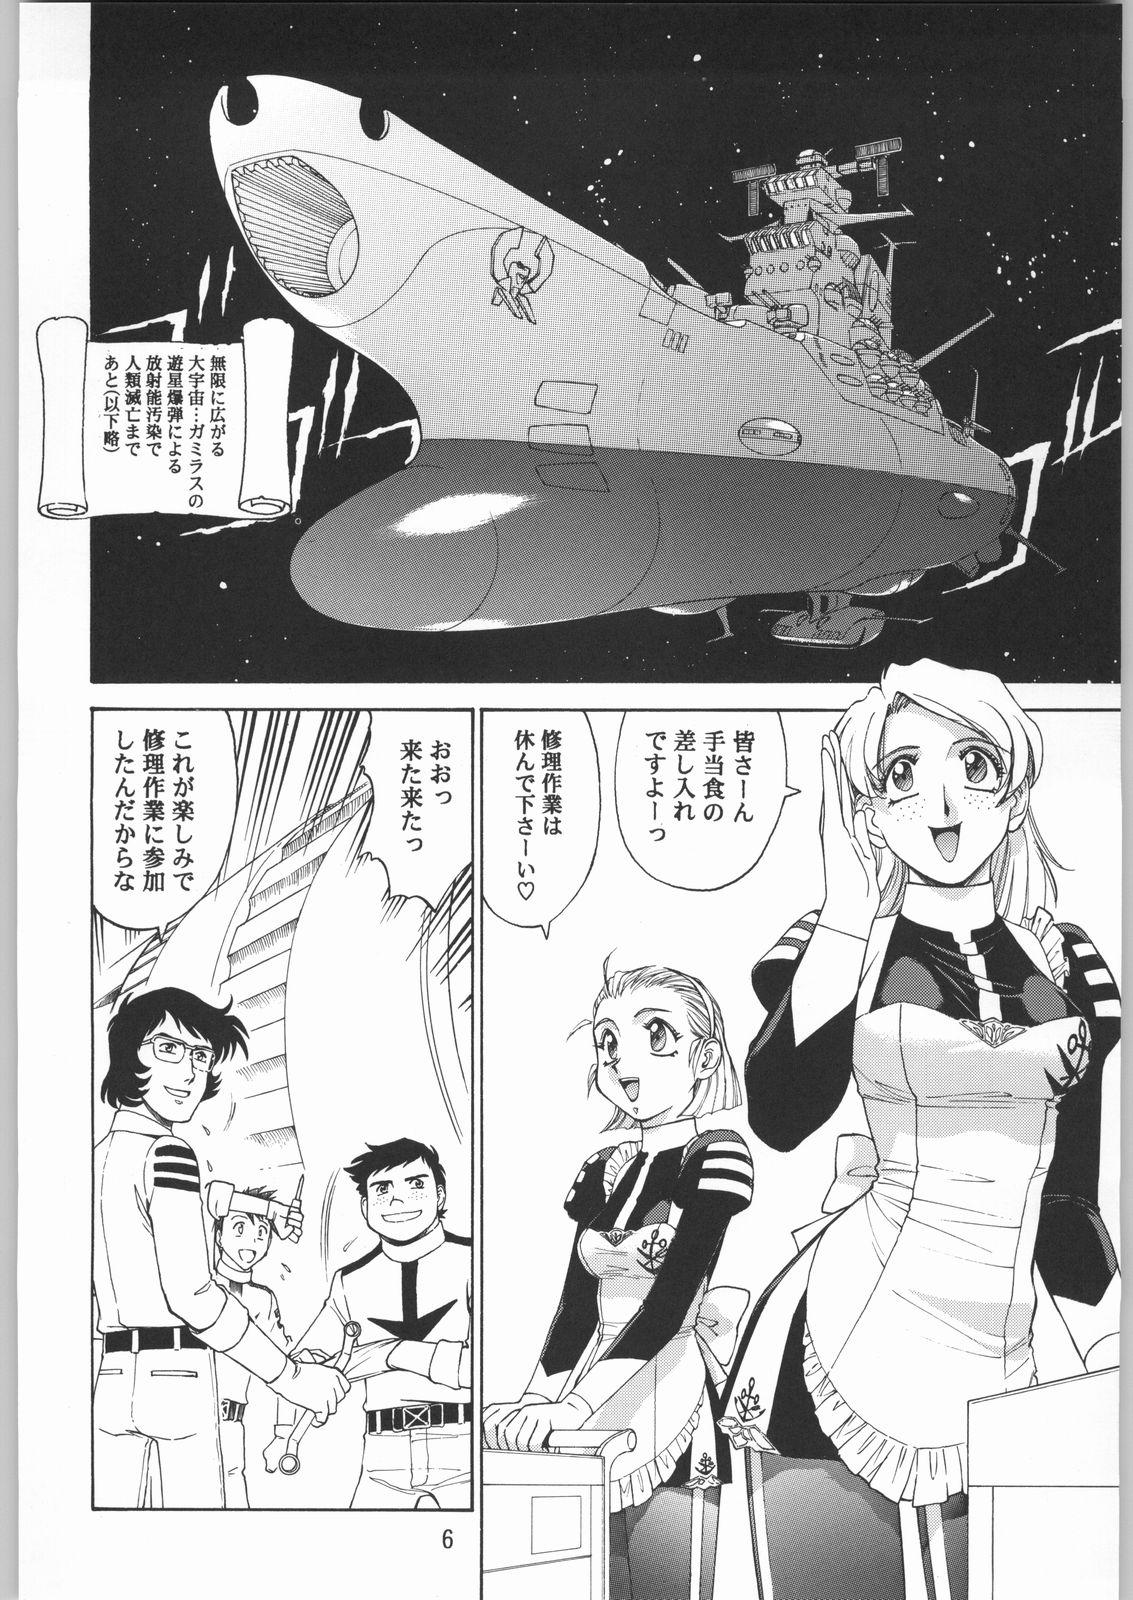 Bigass Megaton Punch 1 - Space battleship yamato Chobits Pau - Page 5